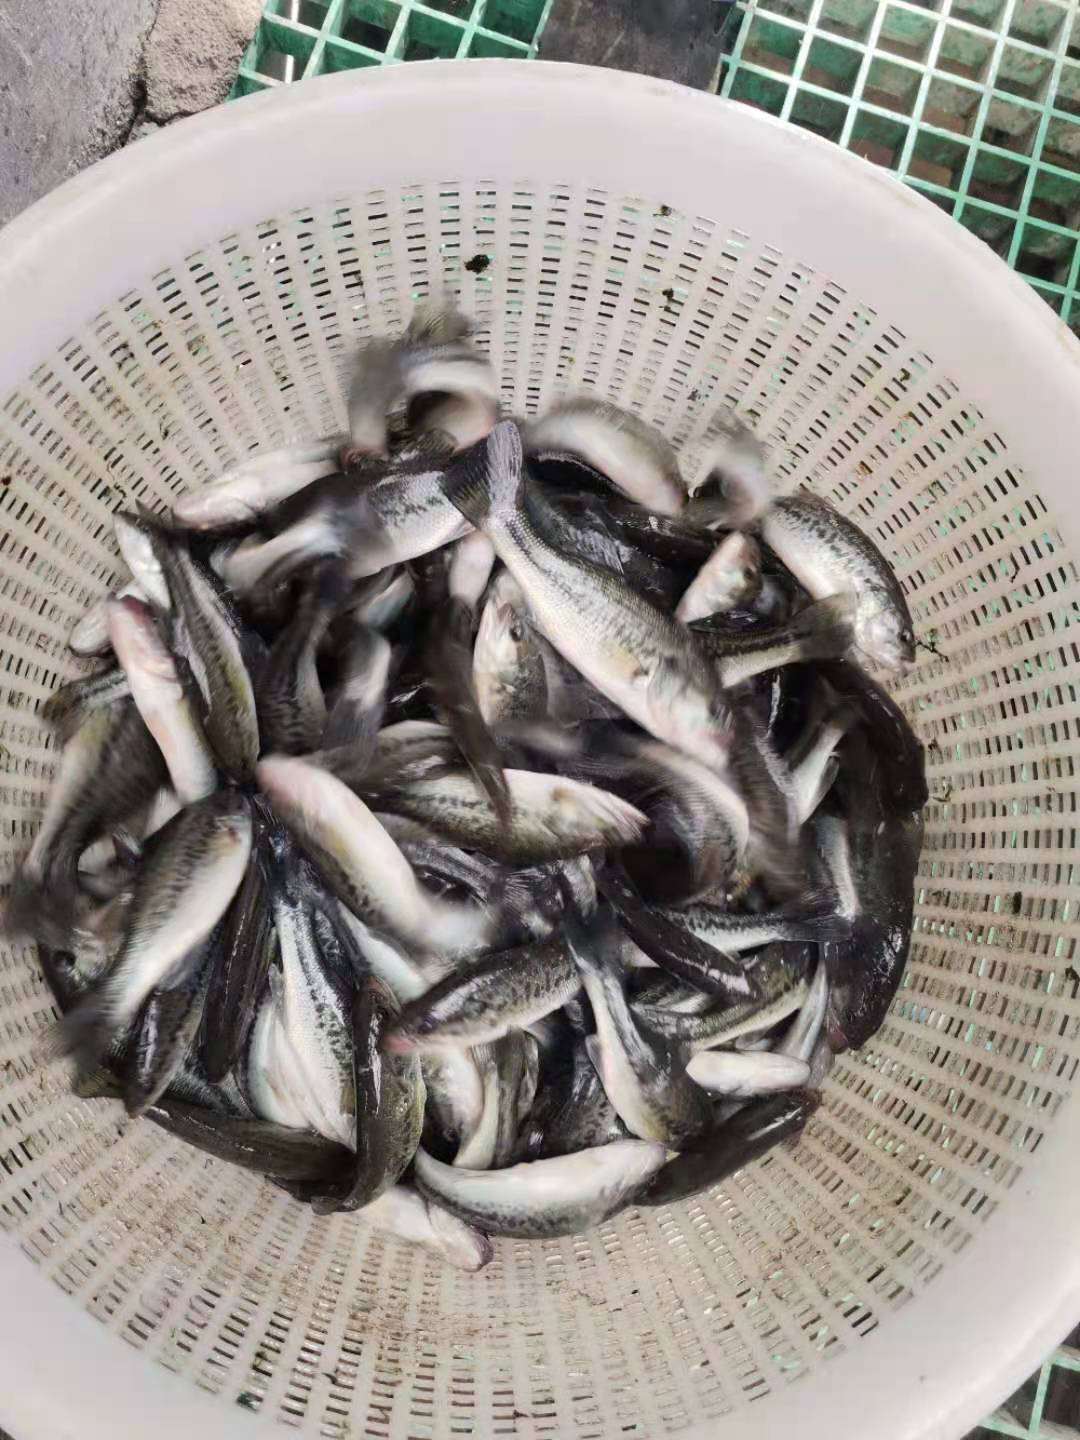 大量出售优质鲈鱼鱼苗 一斤10-50尾 鲜活鱼类 质优价廉2